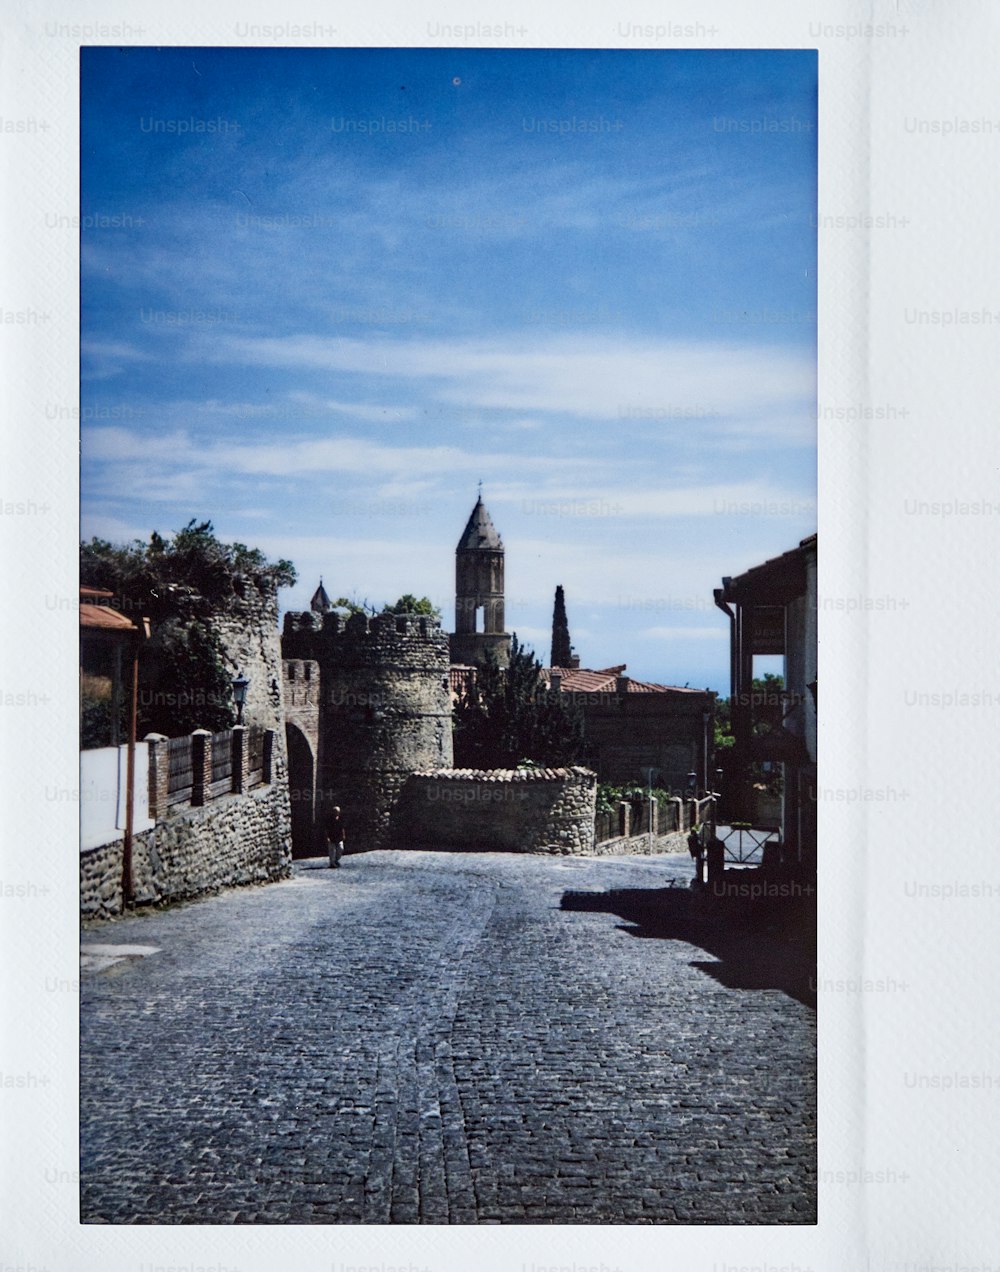 時計塔を背景にした石畳の通りの写真